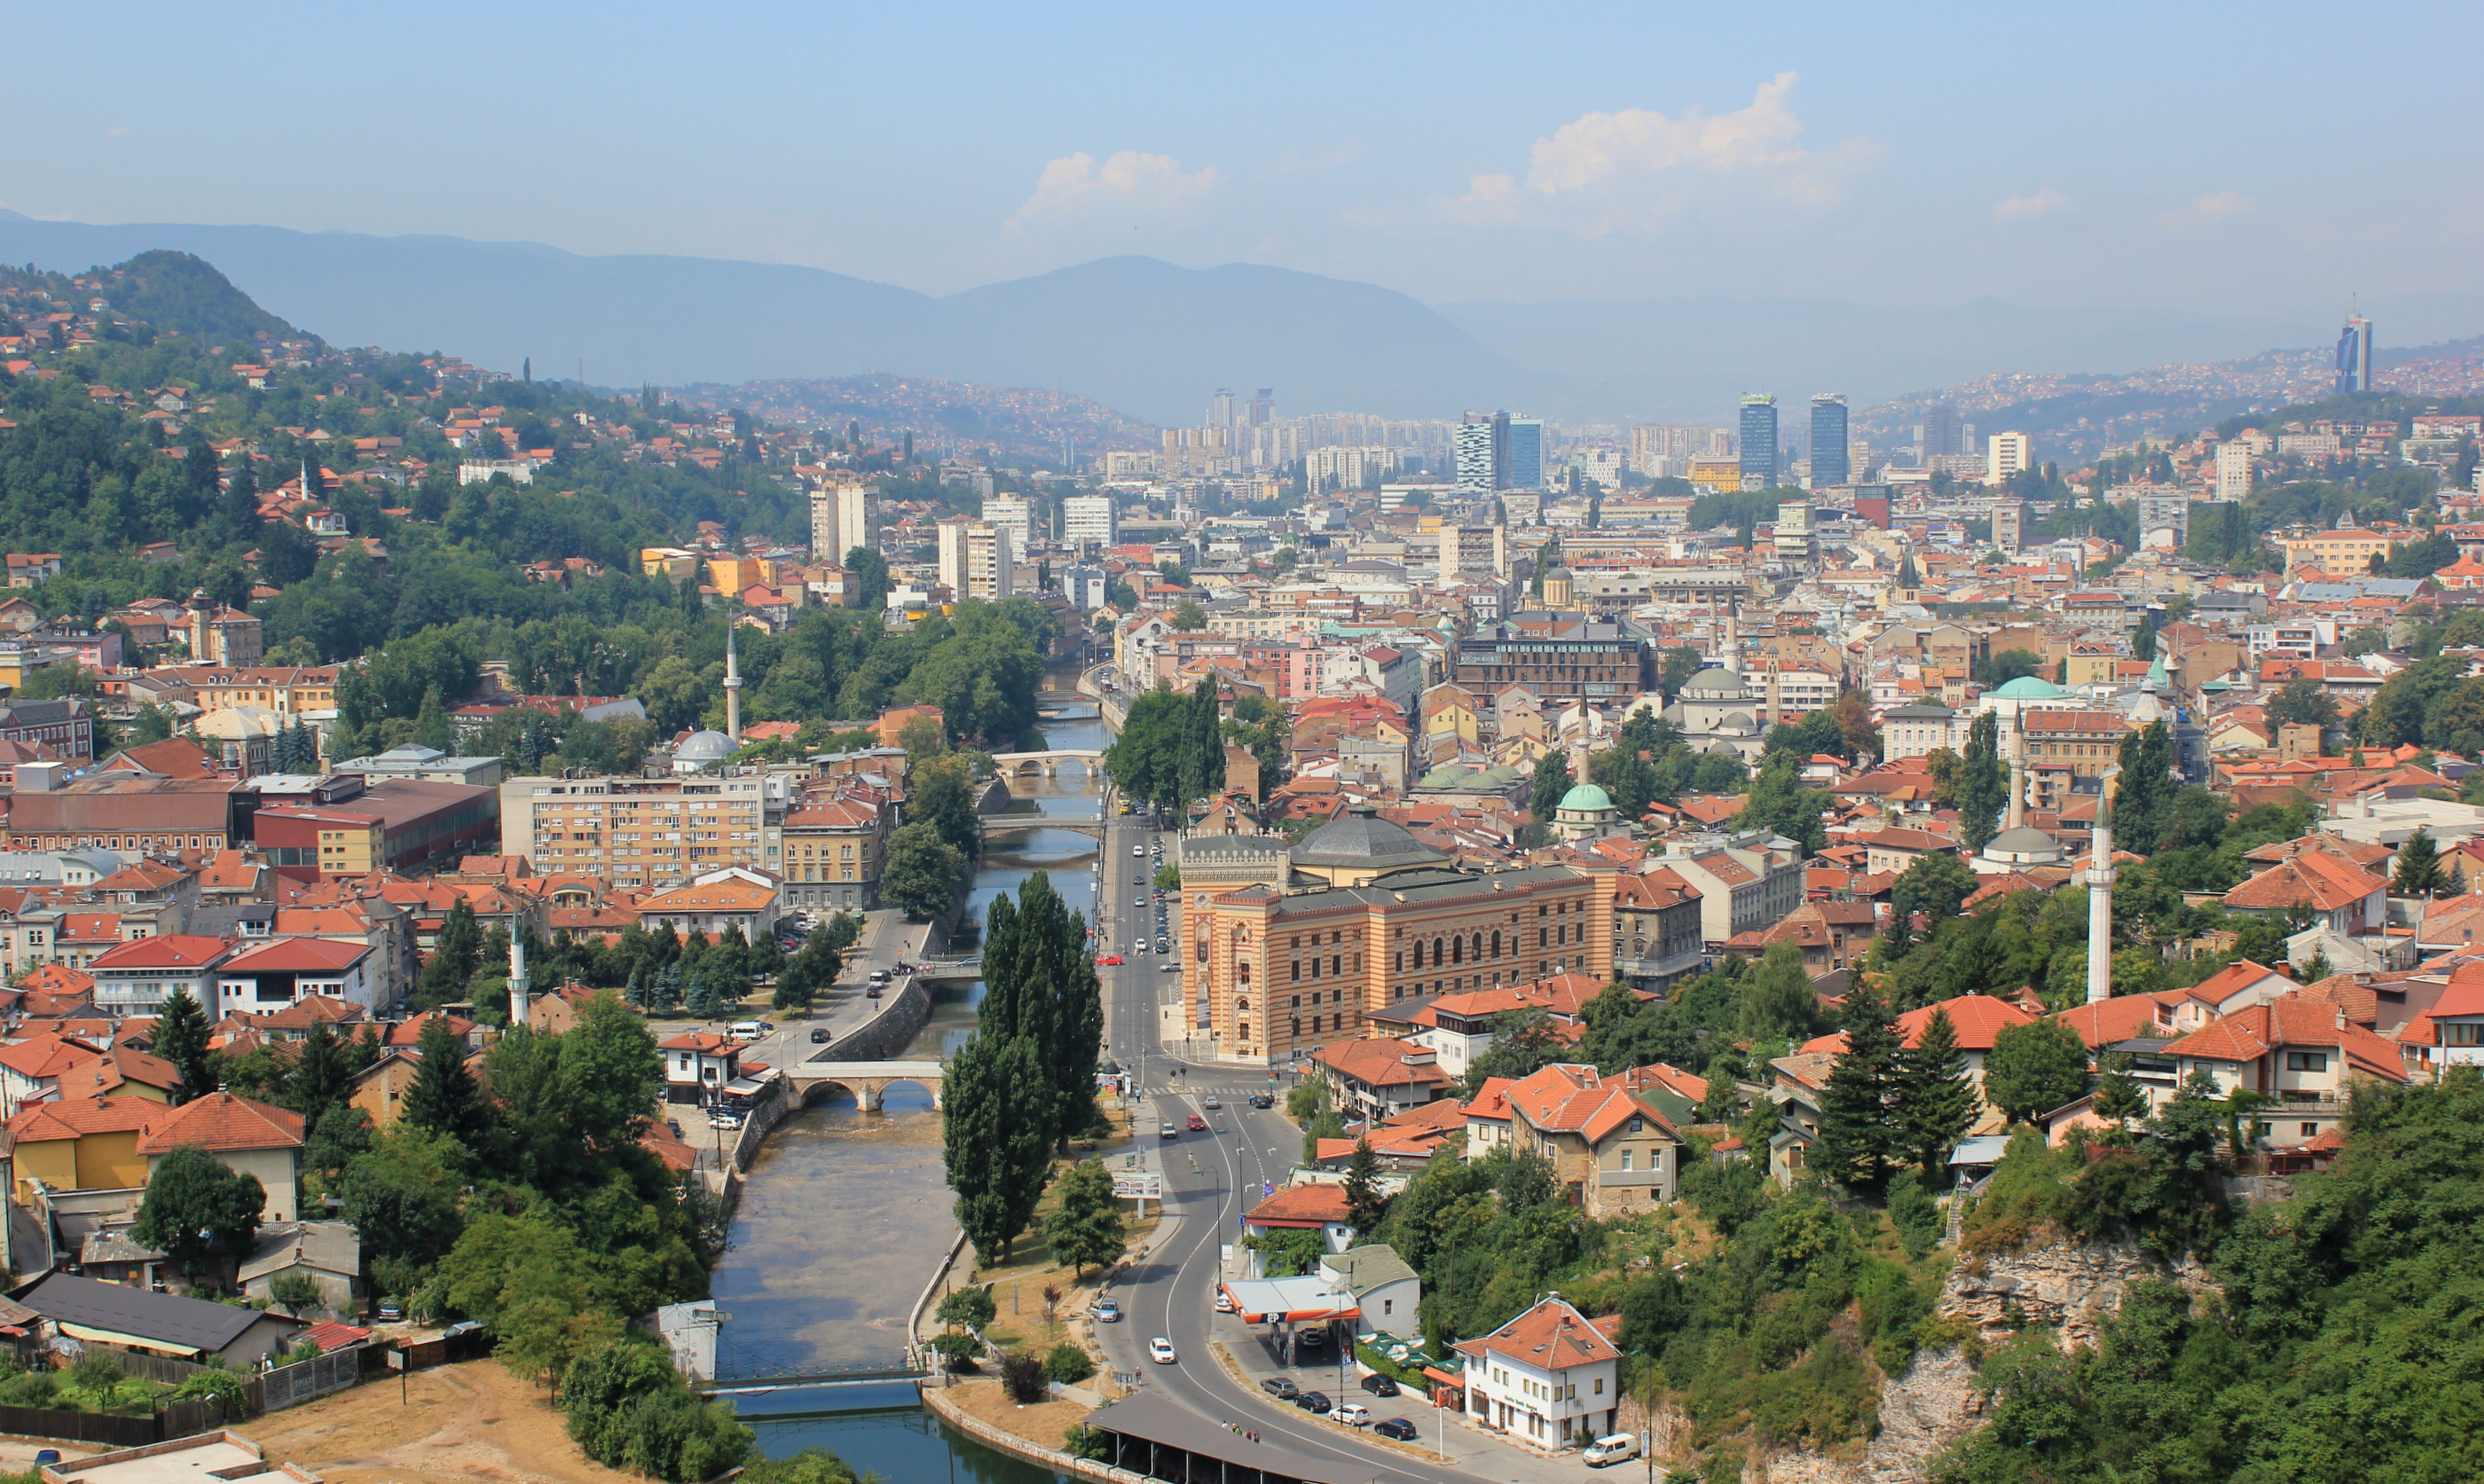 Sarajevo 1